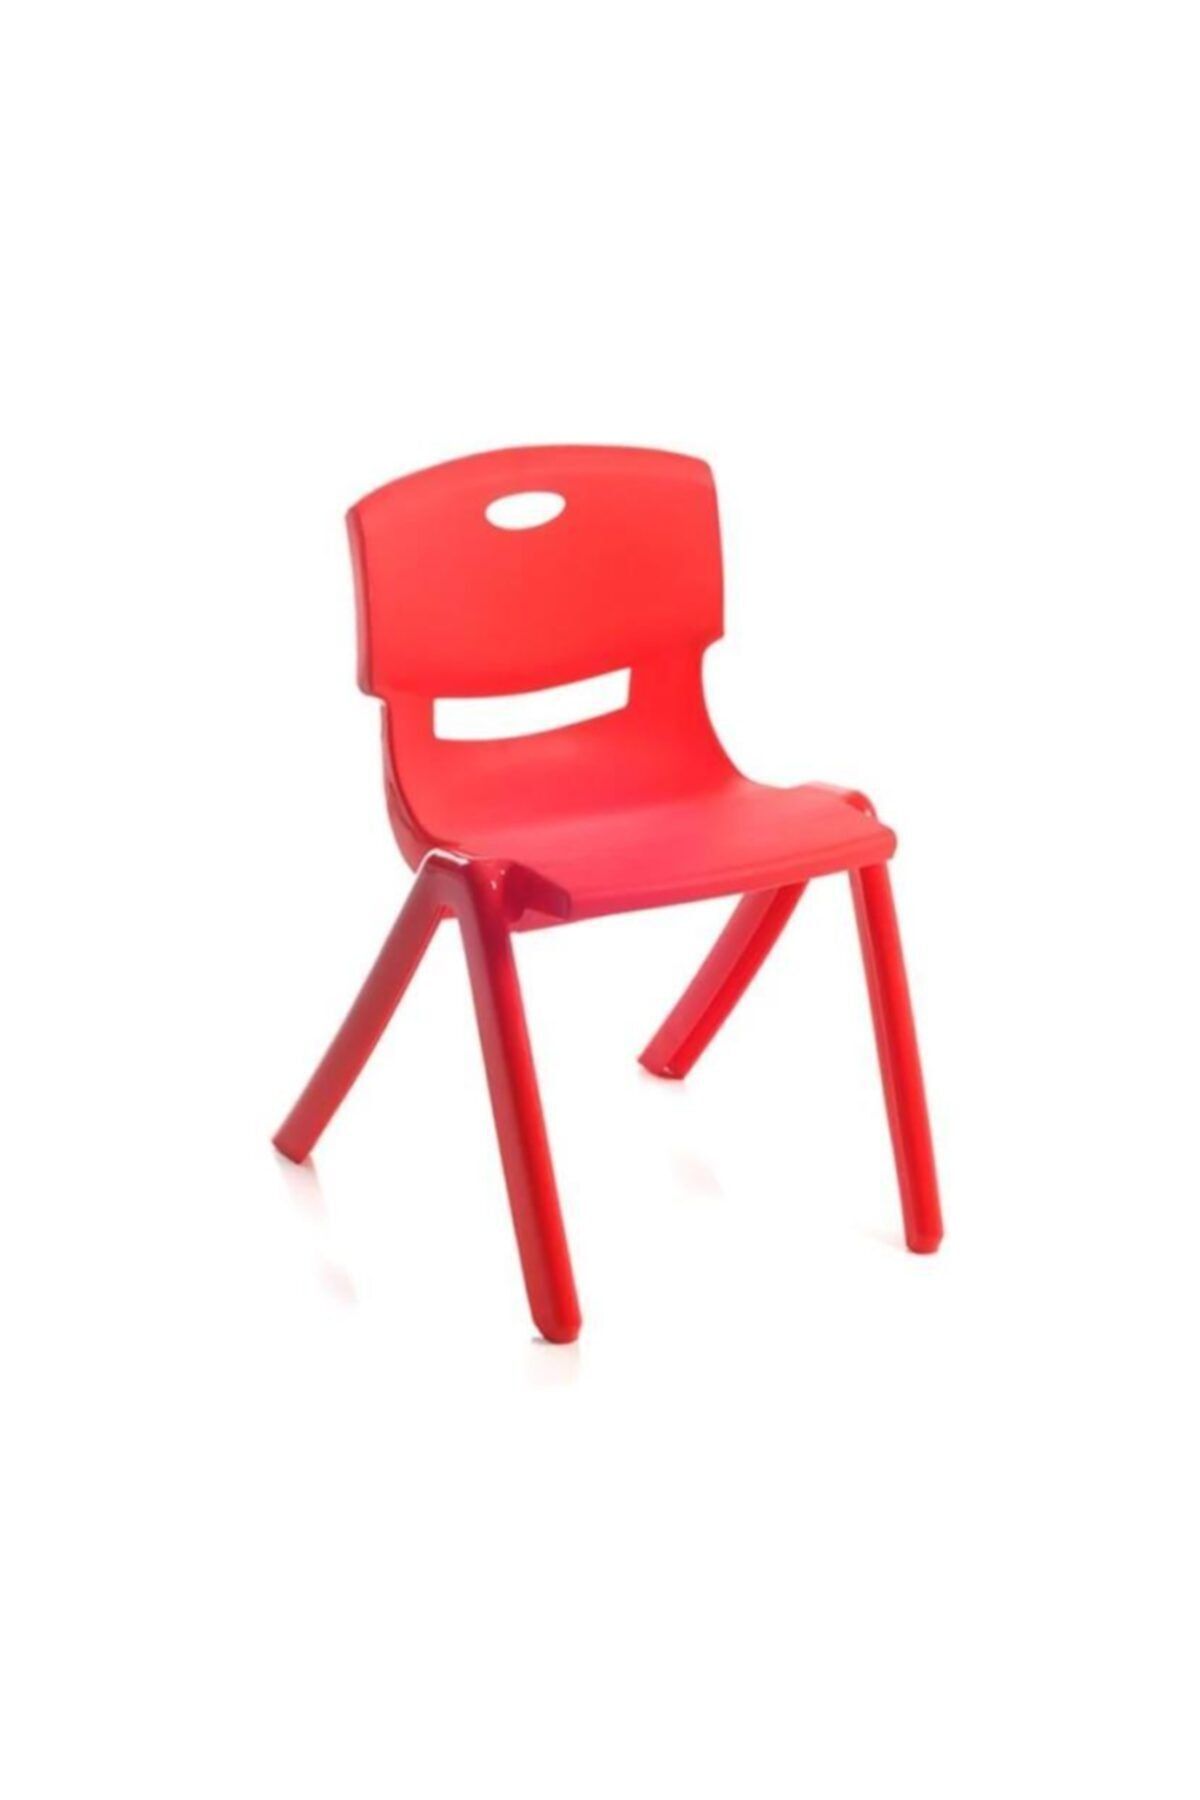 abnturk 4 Adet Sağlam Çocuk Sandalyesi Arkalıklı Kreş Ve Anaokulu Sandalyesi 35c